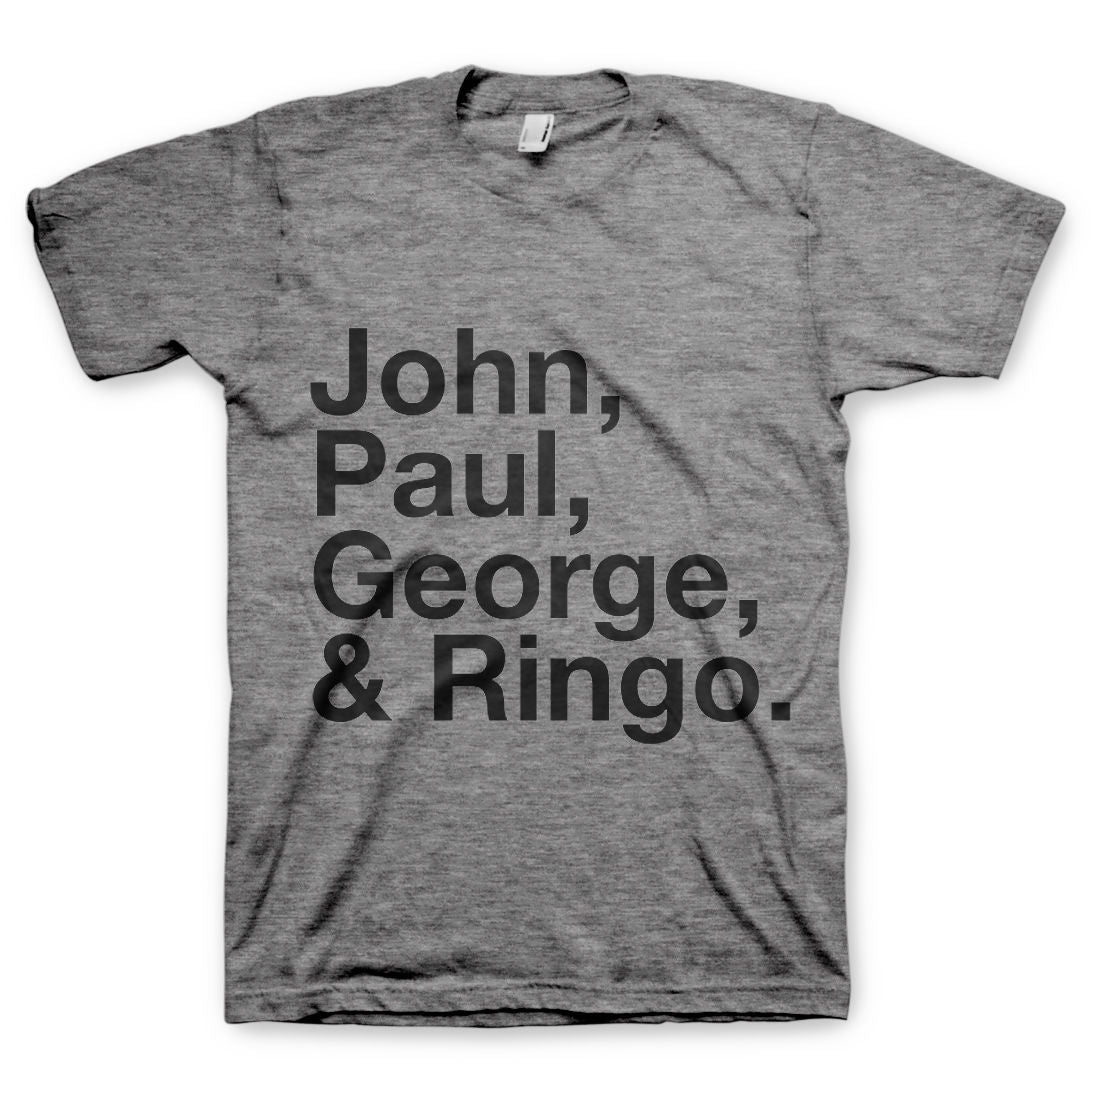 The Beatles - John, Paul, George, Ringo T-Shirt